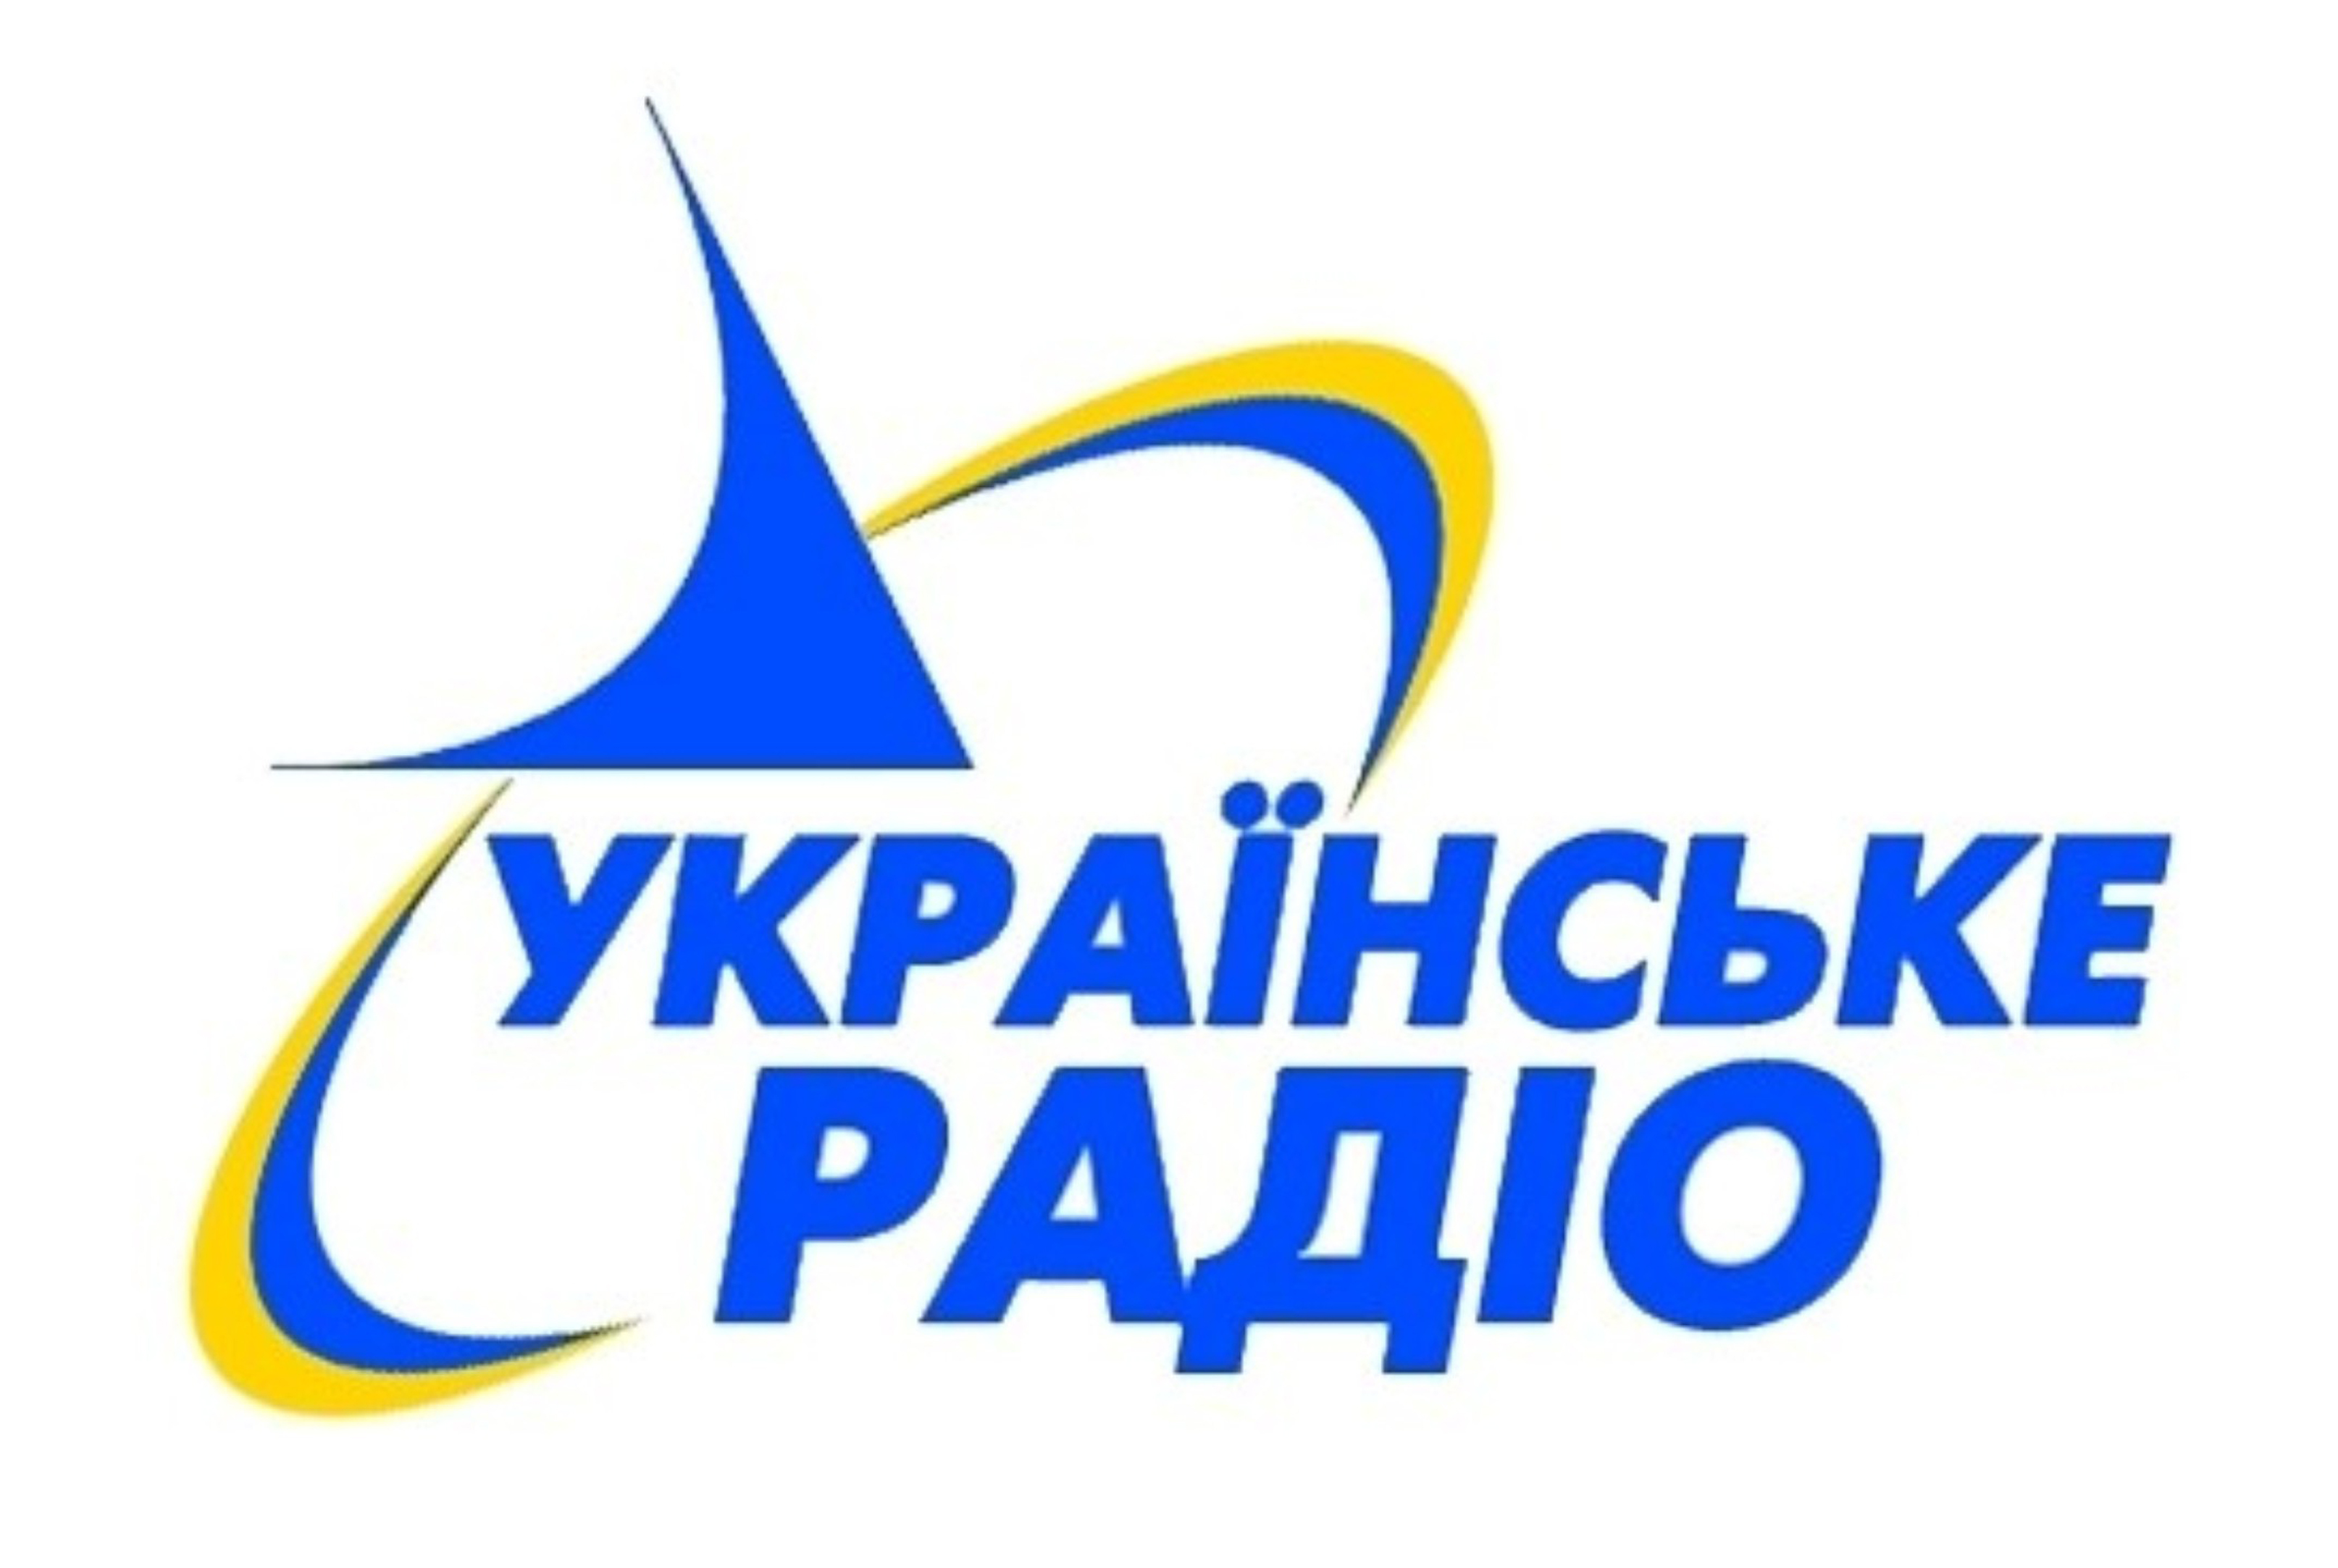 «Українське радіо» отримало ліцензію ще на 17 частот у ФМ-діапазоні